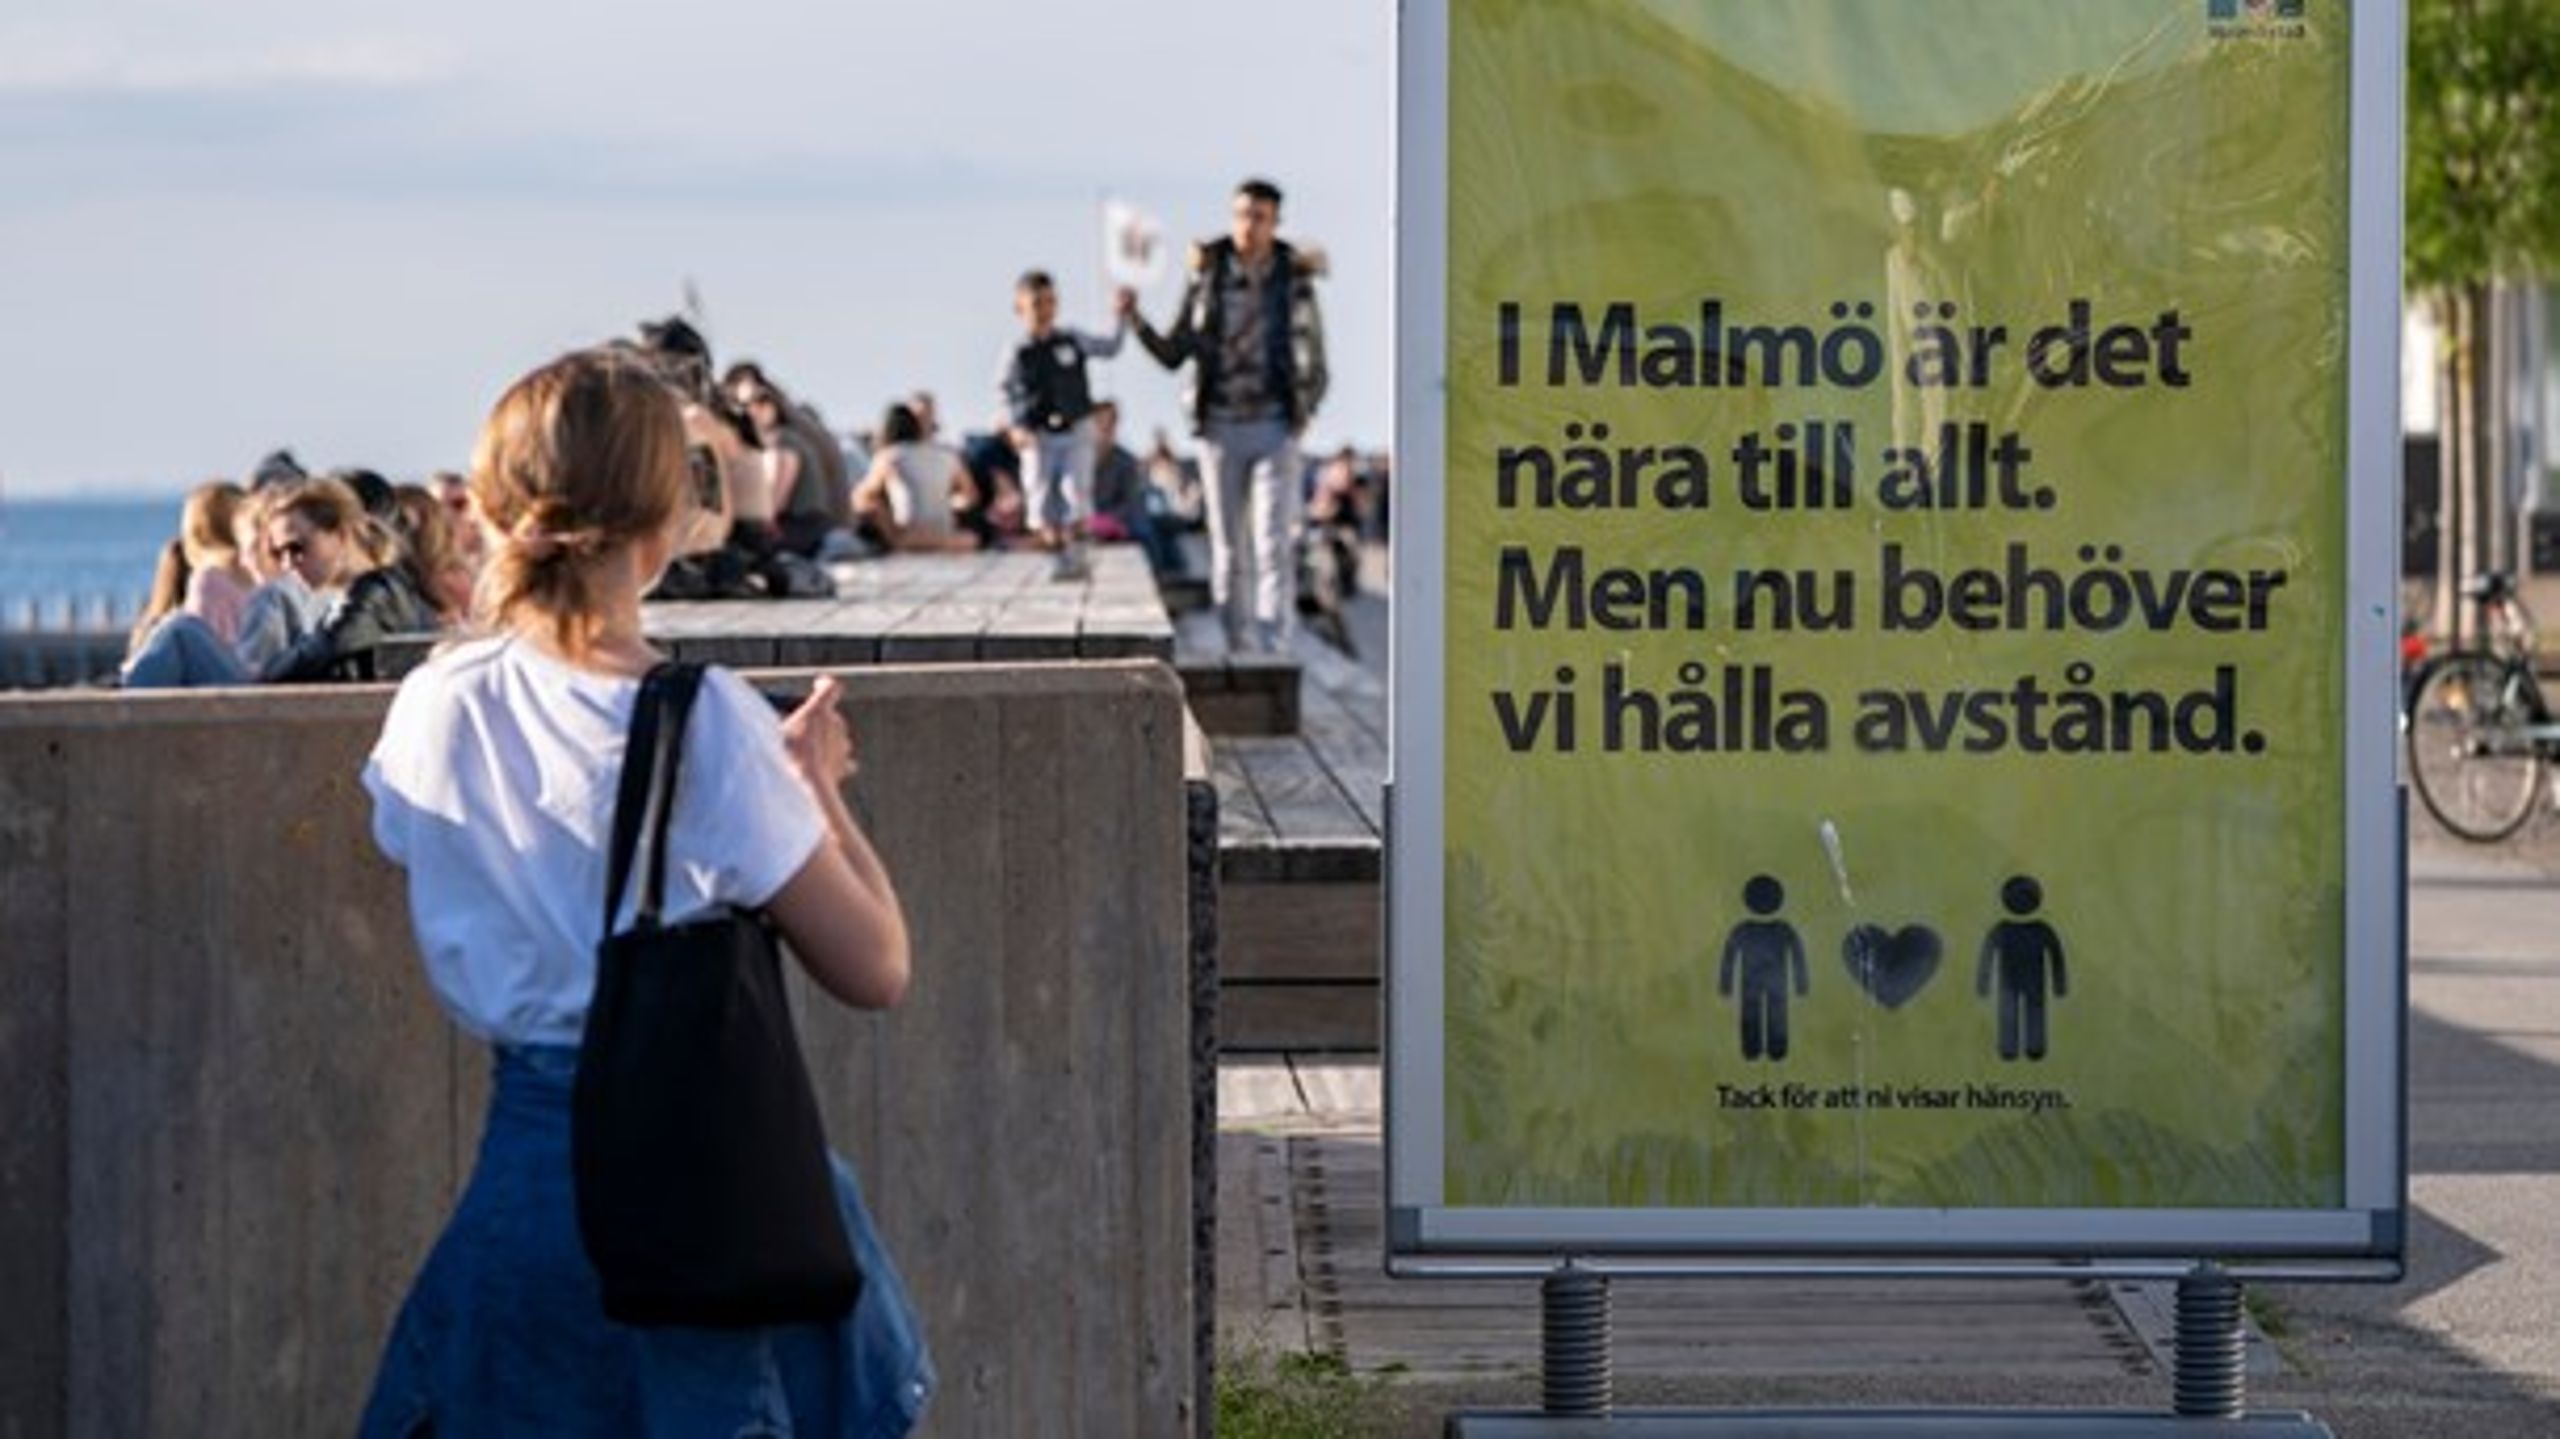 Danskerne kan fremover rejse længere end til Malmø, efter at Udenrigsministeriet har opdateret dens rejsevejledning.